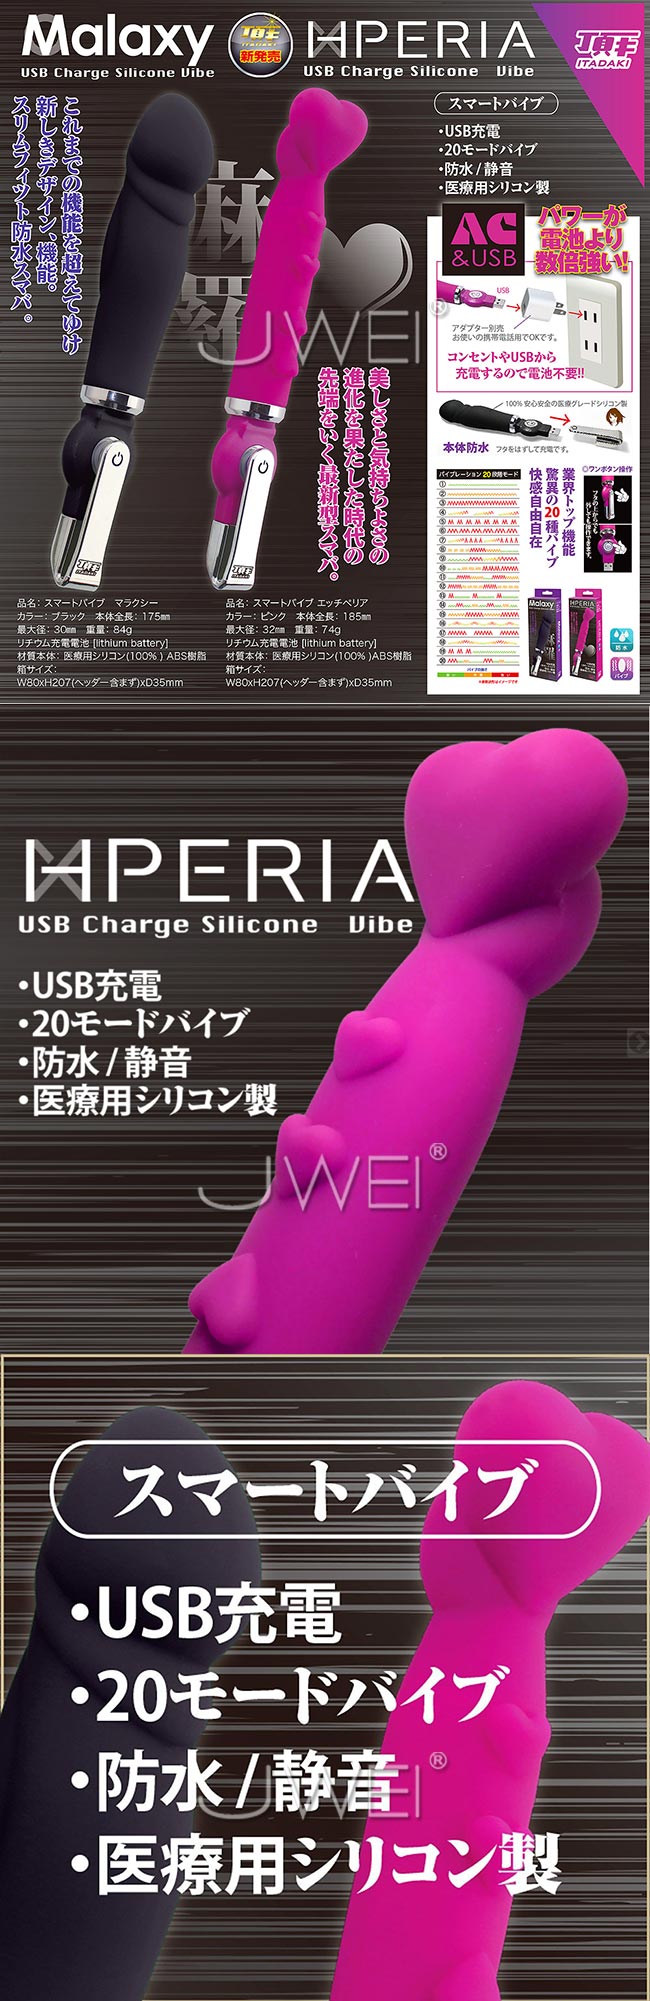 日本原裝進口Tobelca‧HPERIA 20段變頻USB充電防水震動按摩棒